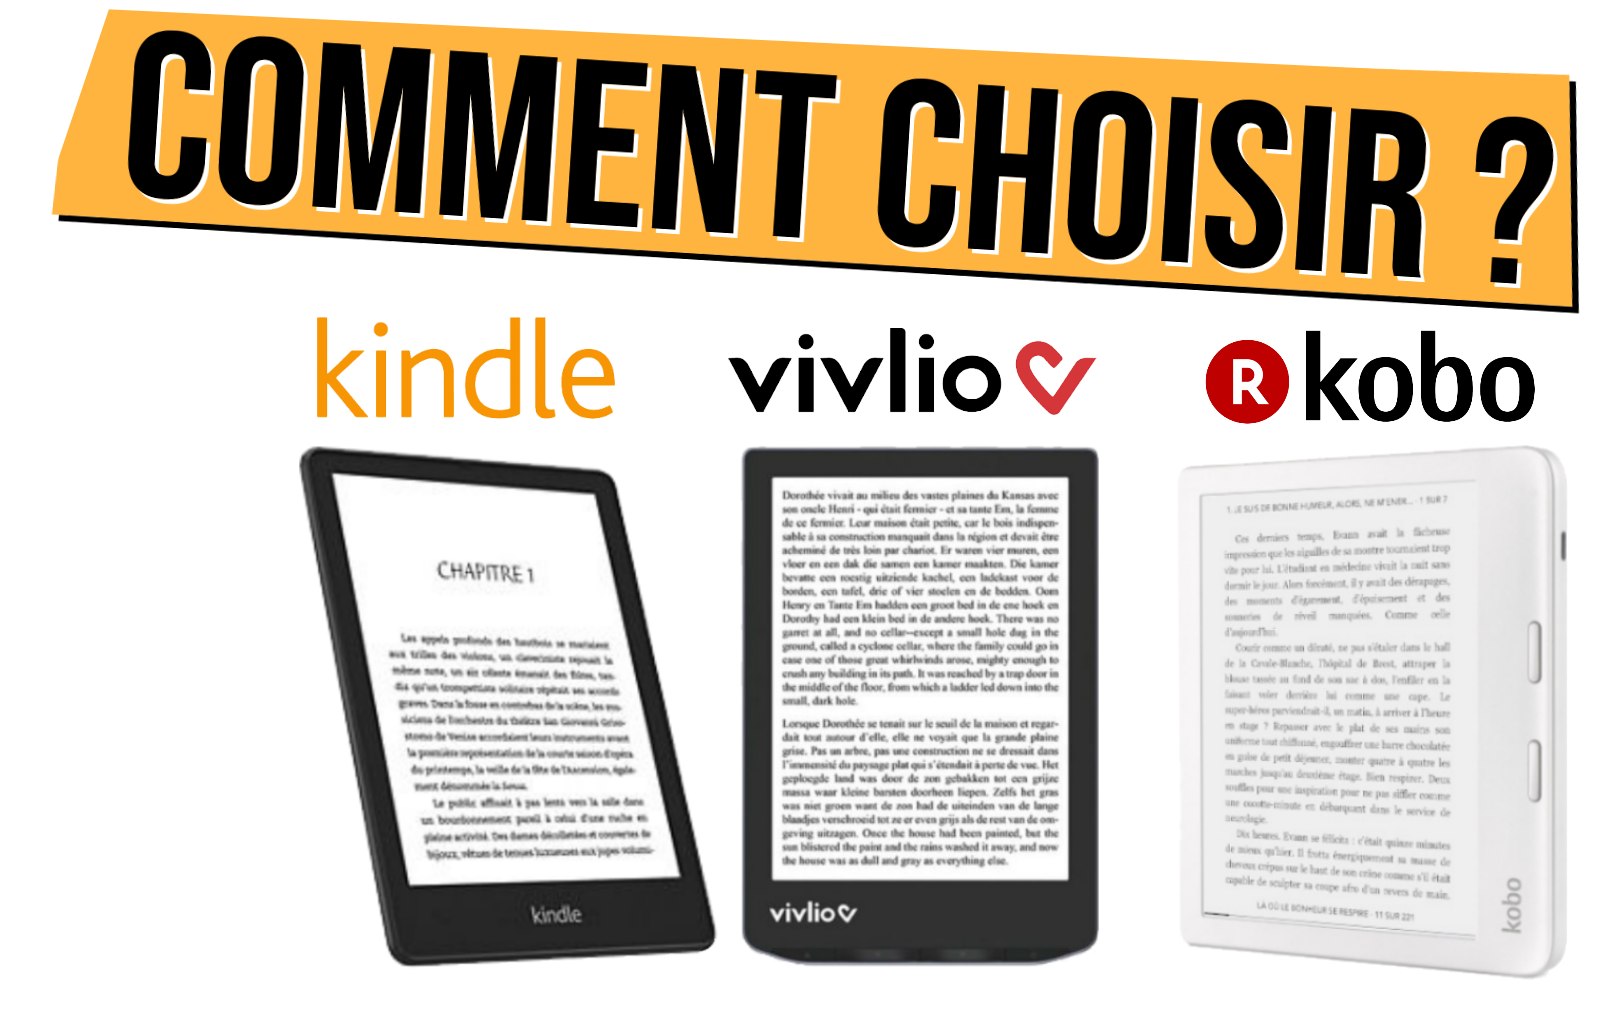 Quelle liseuse Kindle d' choisir ?